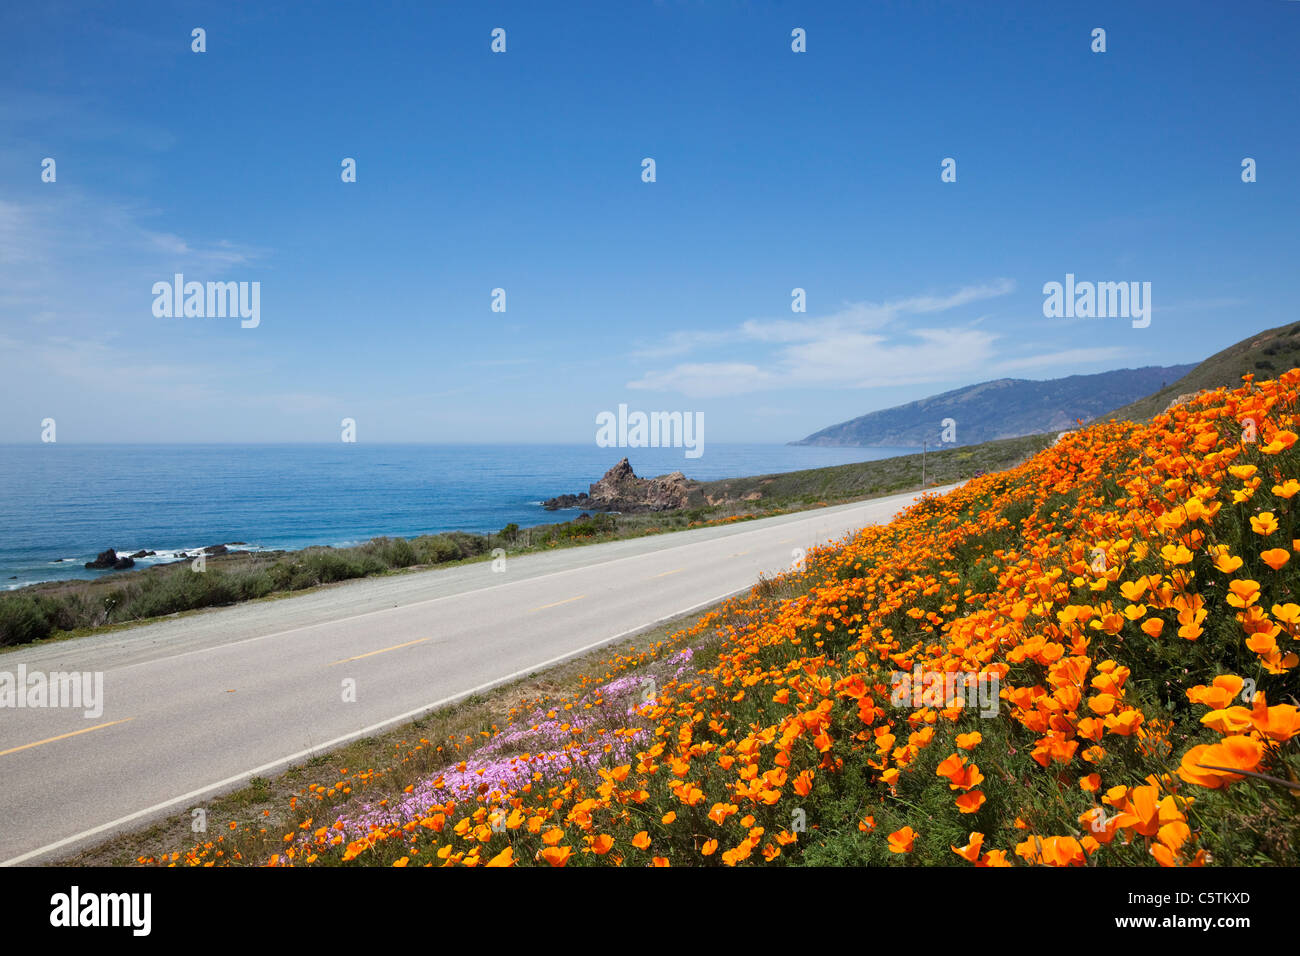 USA, California, california poppies (Eschscholzia californica) at coast Stock Photo